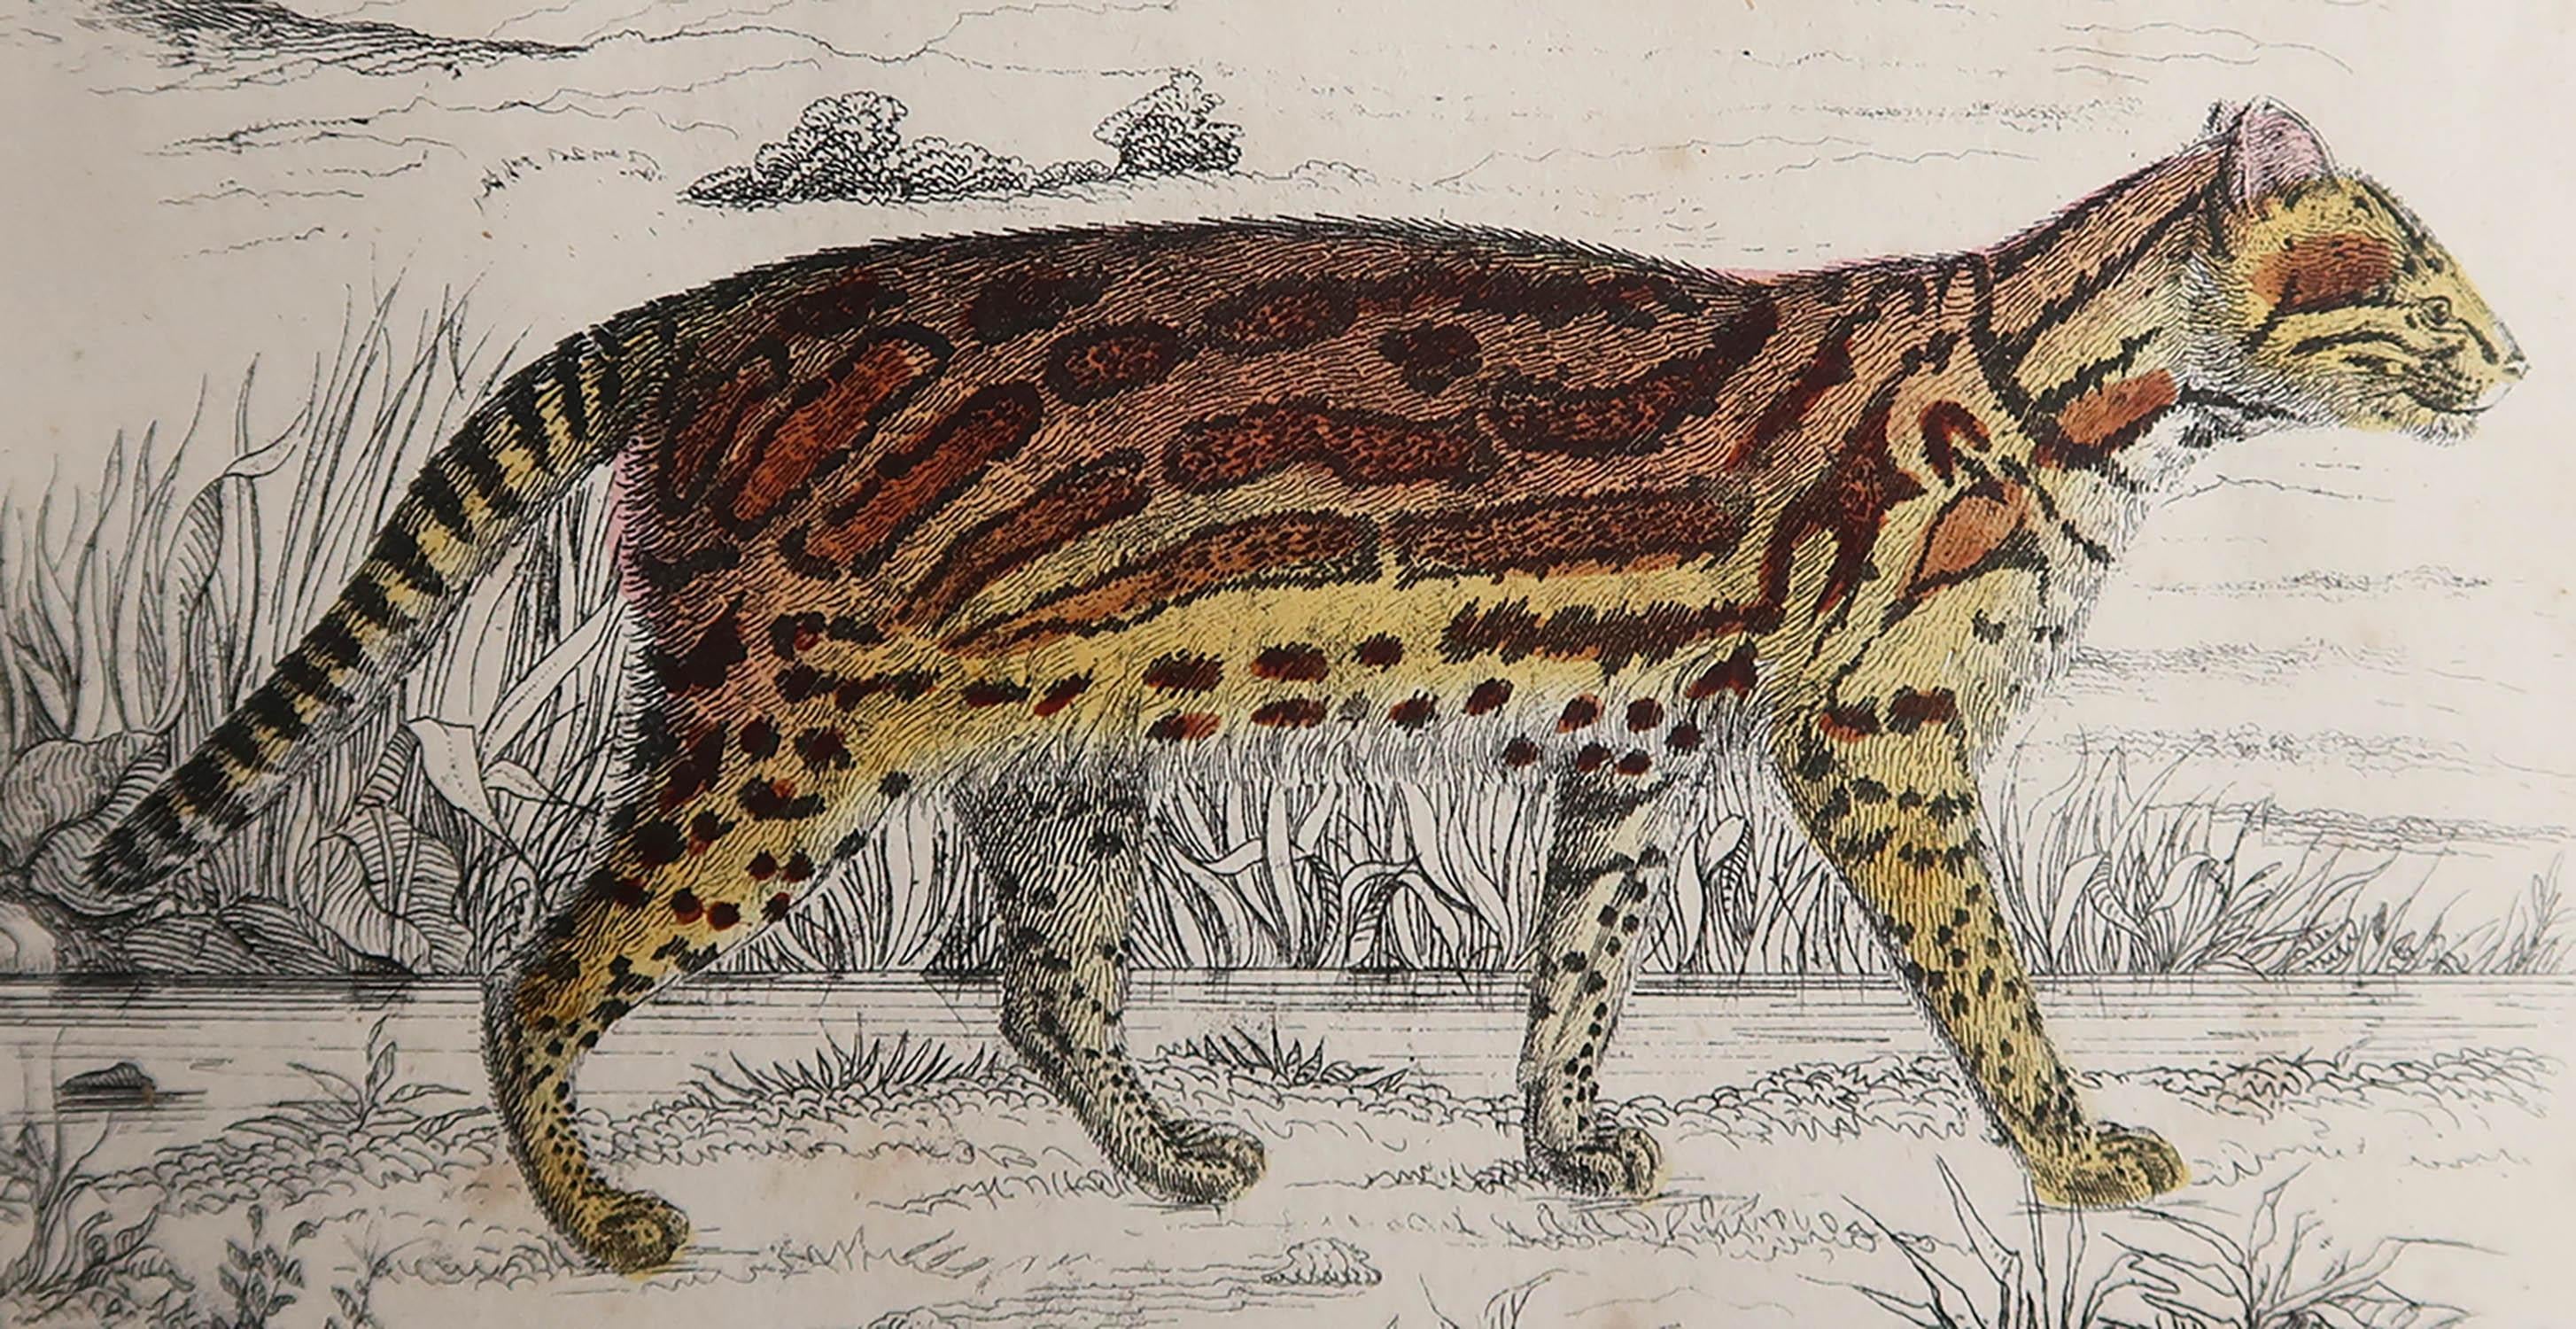 Tolles Bild eines Tigers

Ungerahmt. So haben Sie die Möglichkeit, Ihre eigene Auswahl an Rahmen zu treffen.

Lithographie nach Captain Brown mit Original-Handkolorit.

Veröffentlicht 1847.



 


